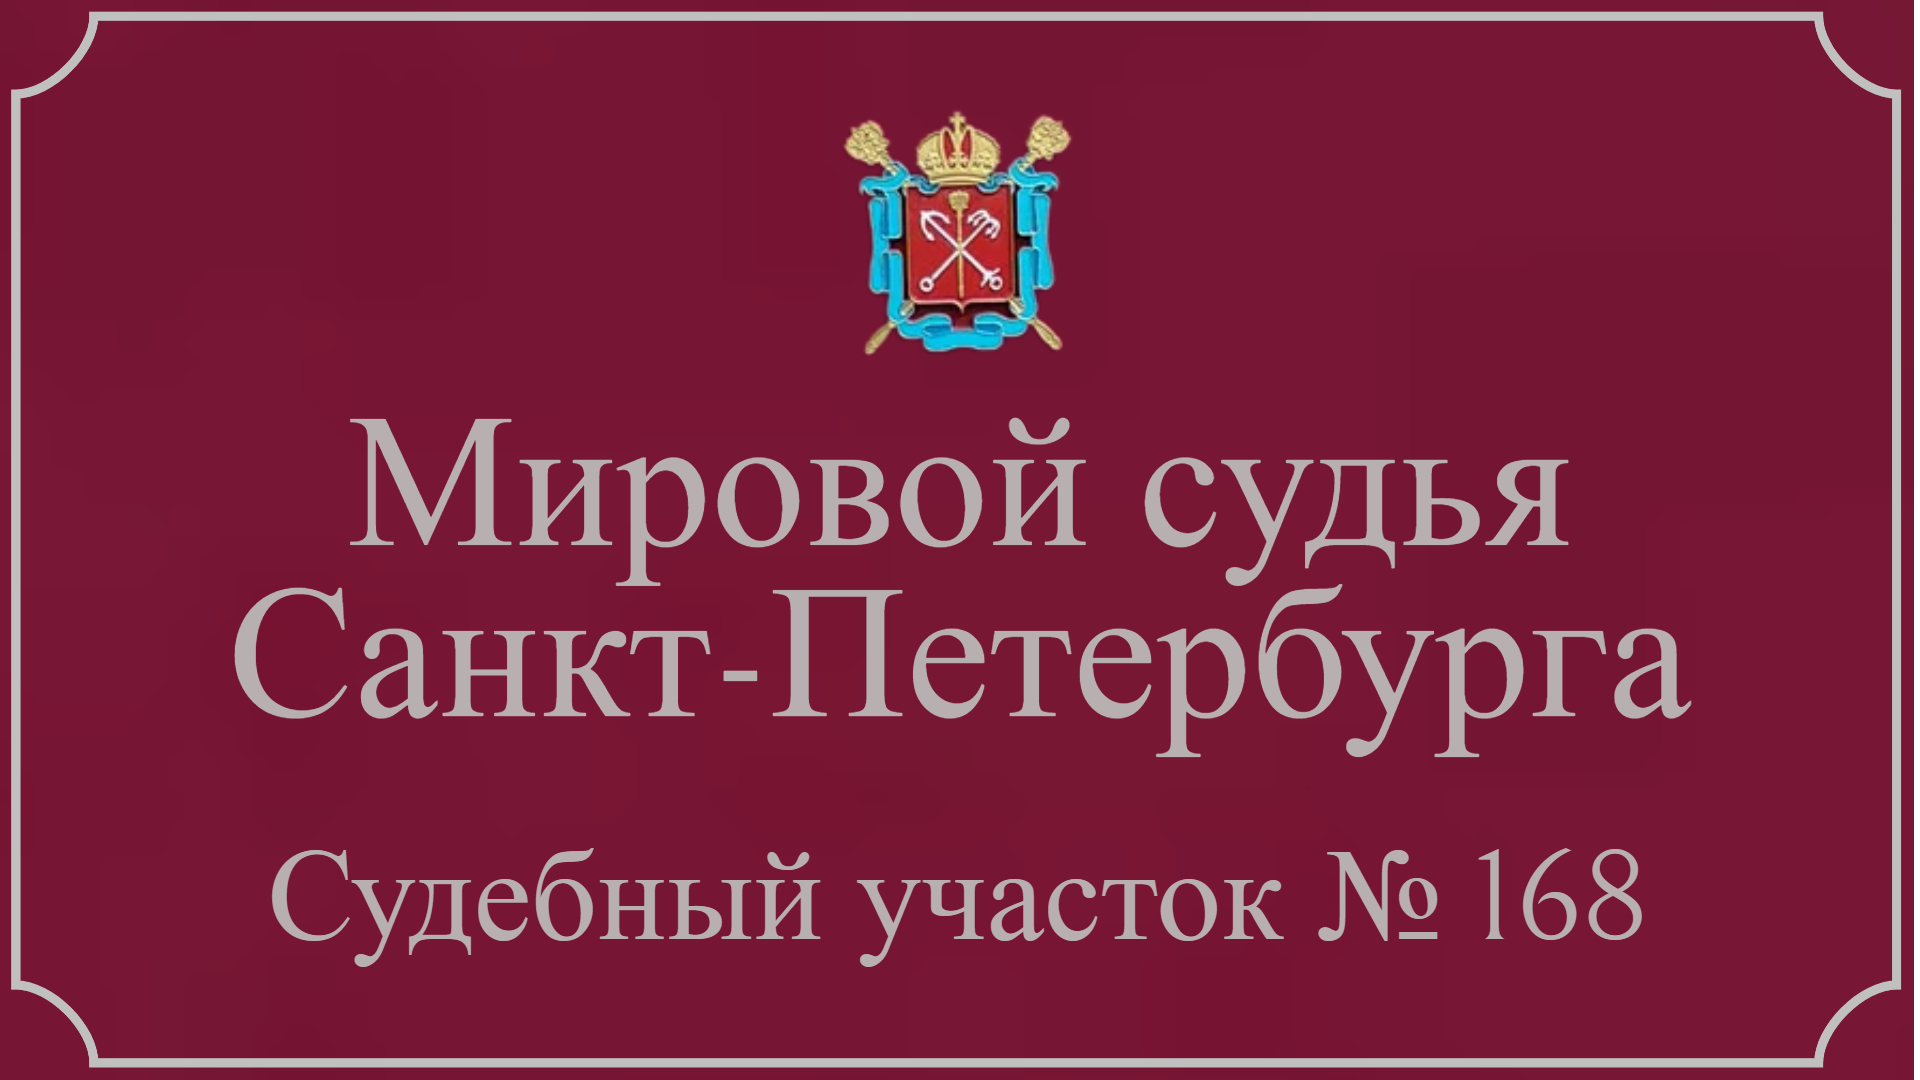 Информация по 168 судебному участку в Санкт-Петербурге.